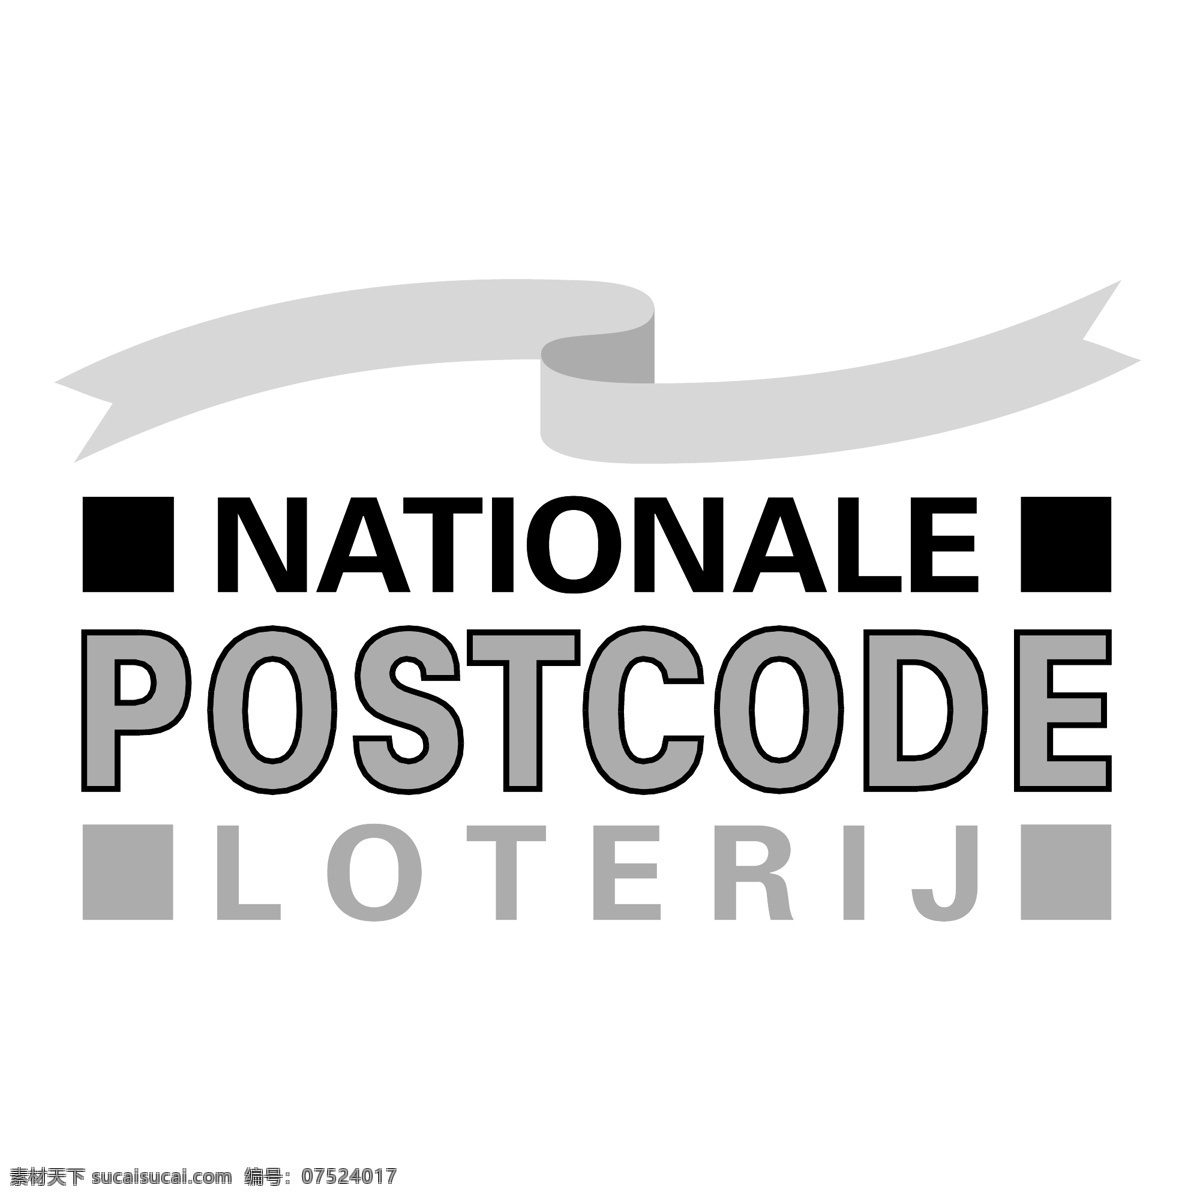 国家 邮政编码 loterij 国家标志 国家邮政编码 向量 标志 向量的国家 nationale 国民银行 矢量 矢量图 建筑家居